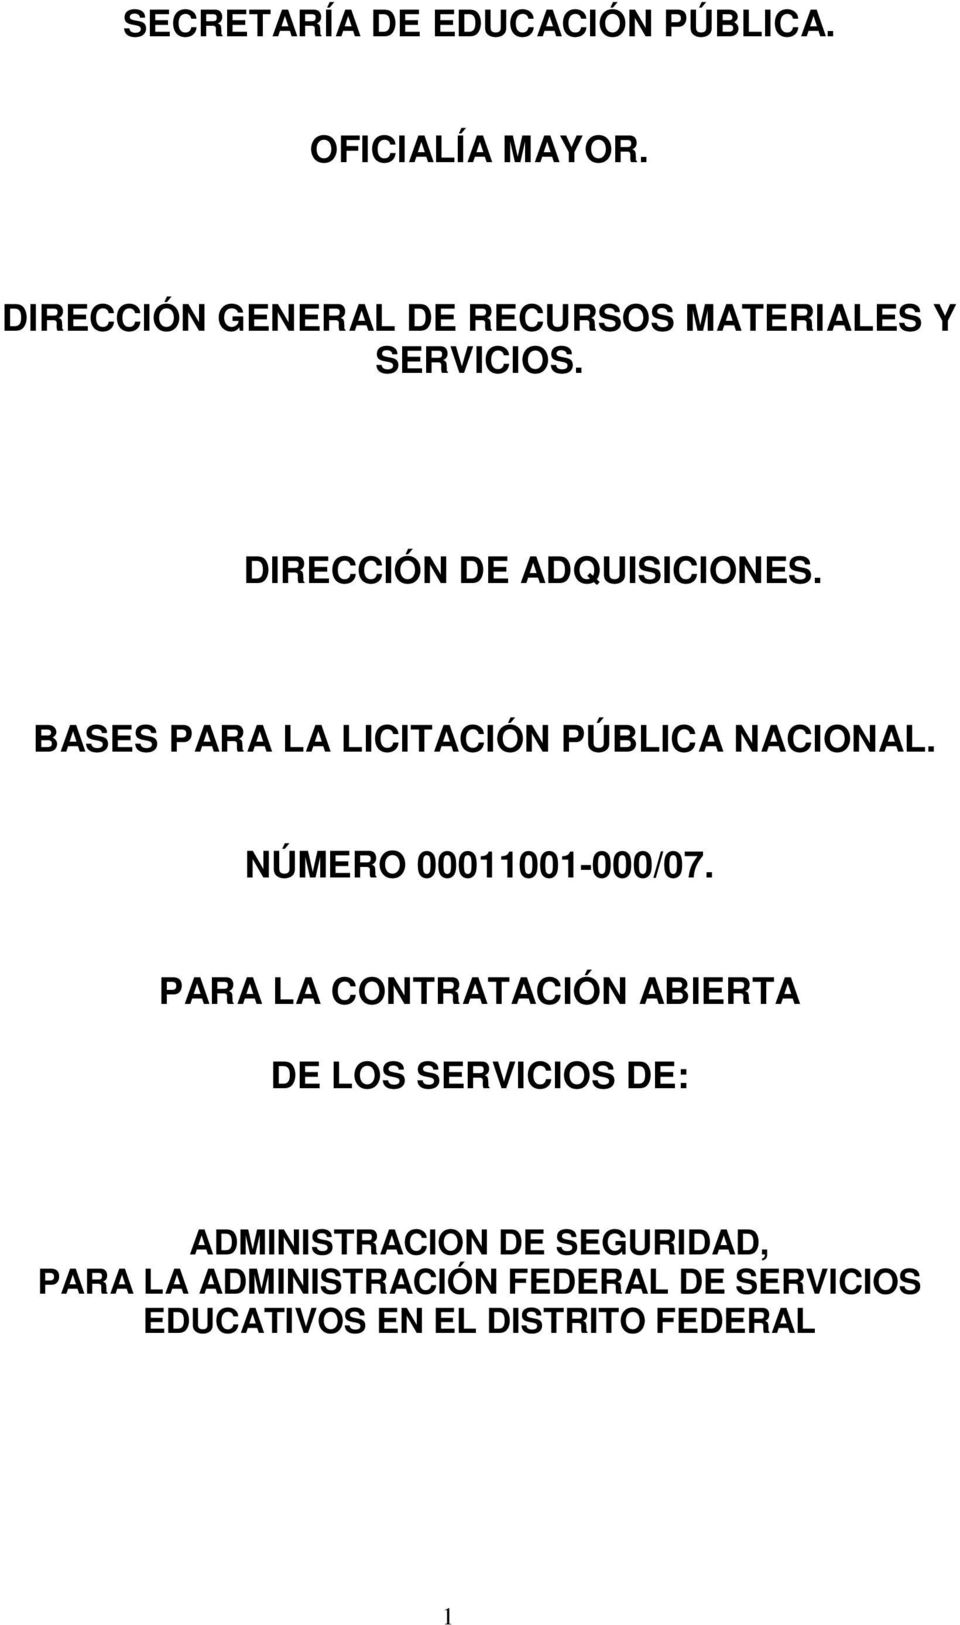 BASES PARA LA LICITACIÓN PÚBLICA NACIONAL. NÚMERO 00011001-000/07.